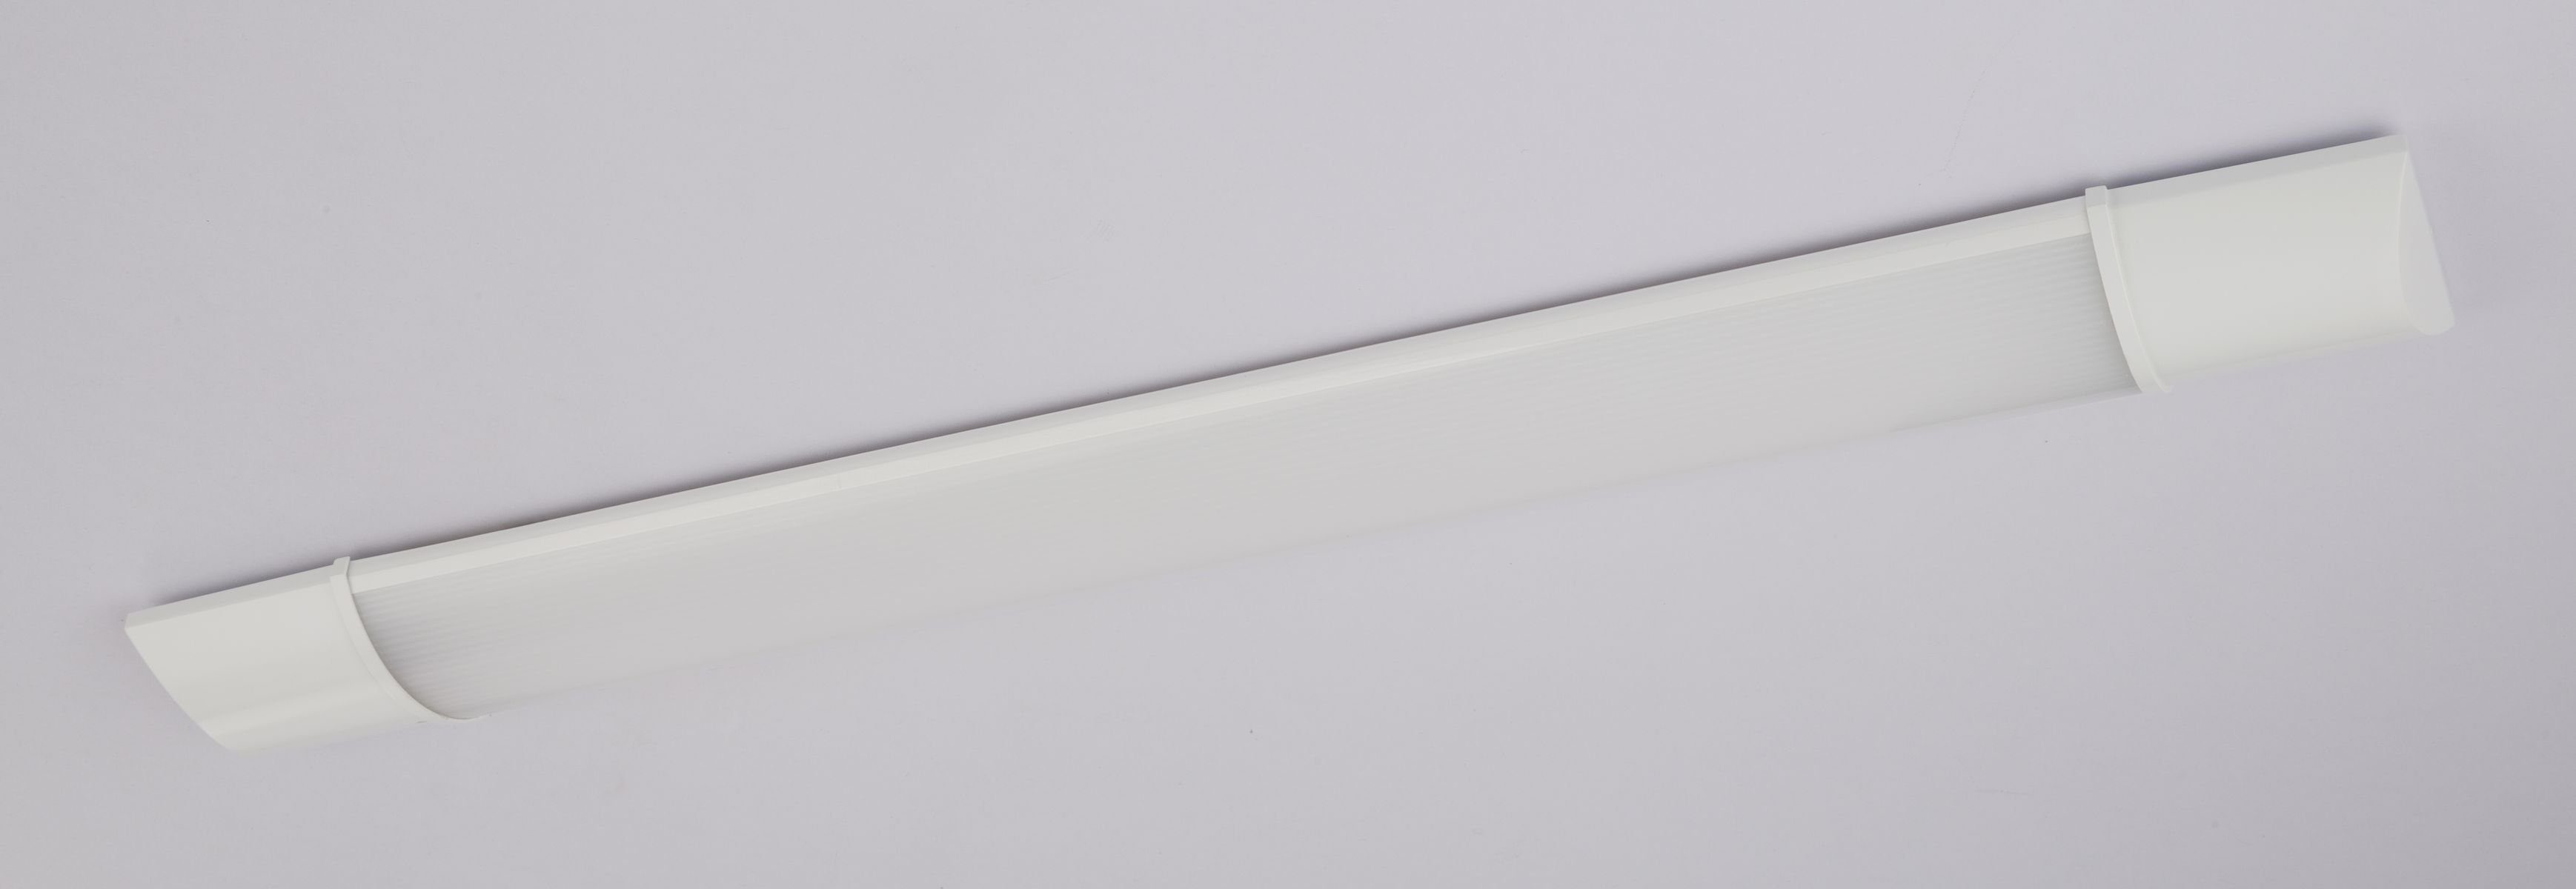 LED GLOBO Unterbaulampe warmweiß Globo Unterbauleuchte Küche Deckenleuchte flach